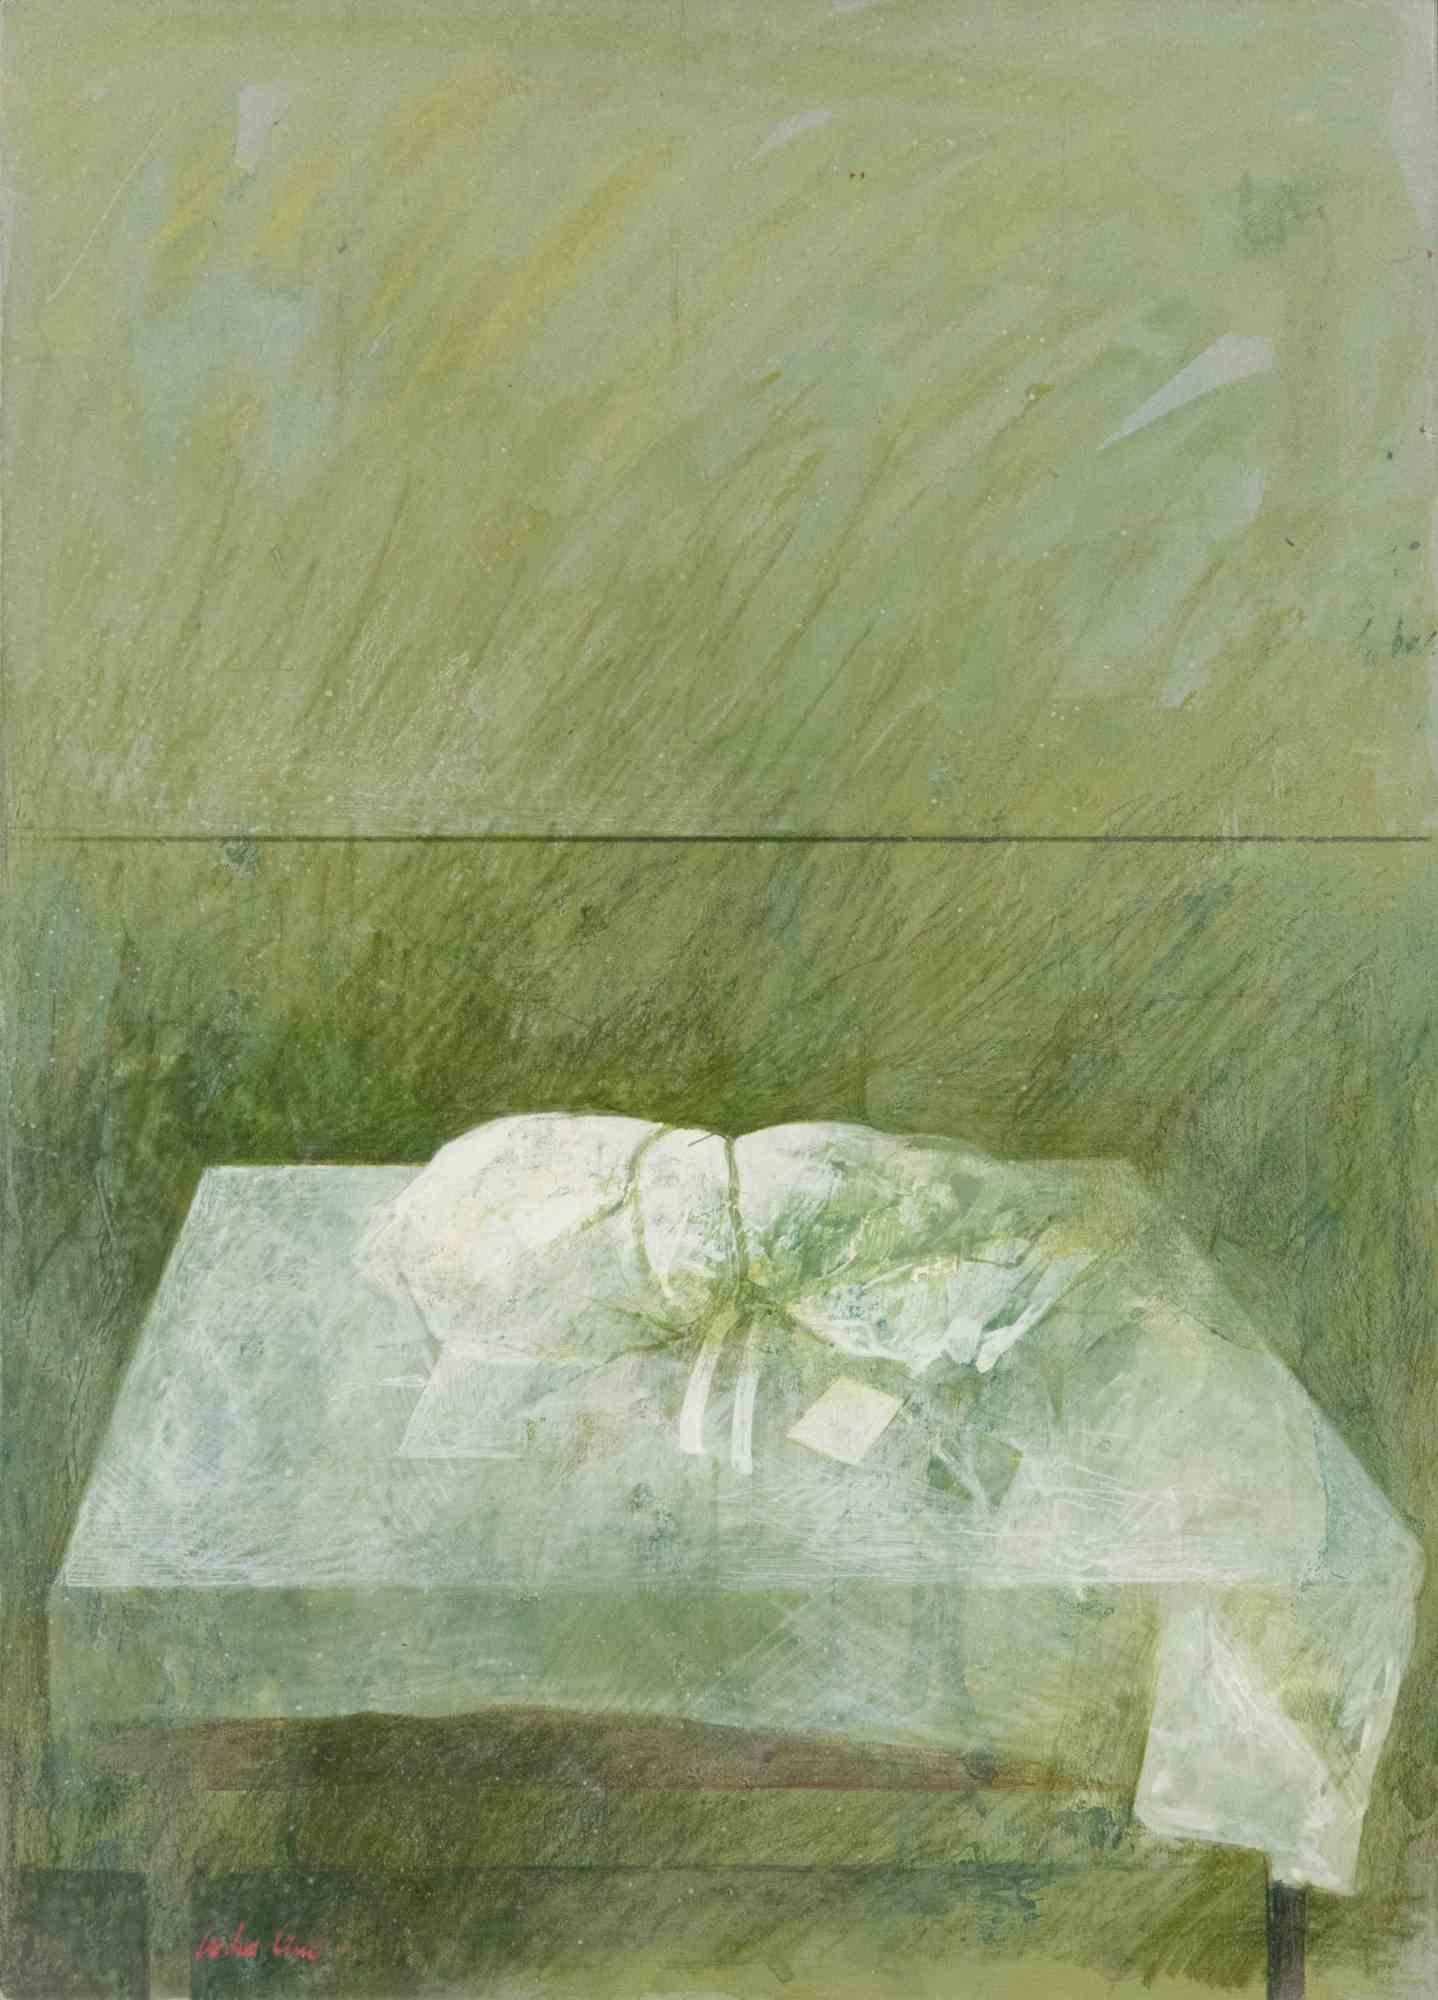 Sans titre est une œuvre d'art contemporain originale réalisée par Pedro Cano dans les années 1980.

Mélange de pastels colorés sur carton.

Inclut le cadre.

Signé à la main dans la marge inférieure gauche.